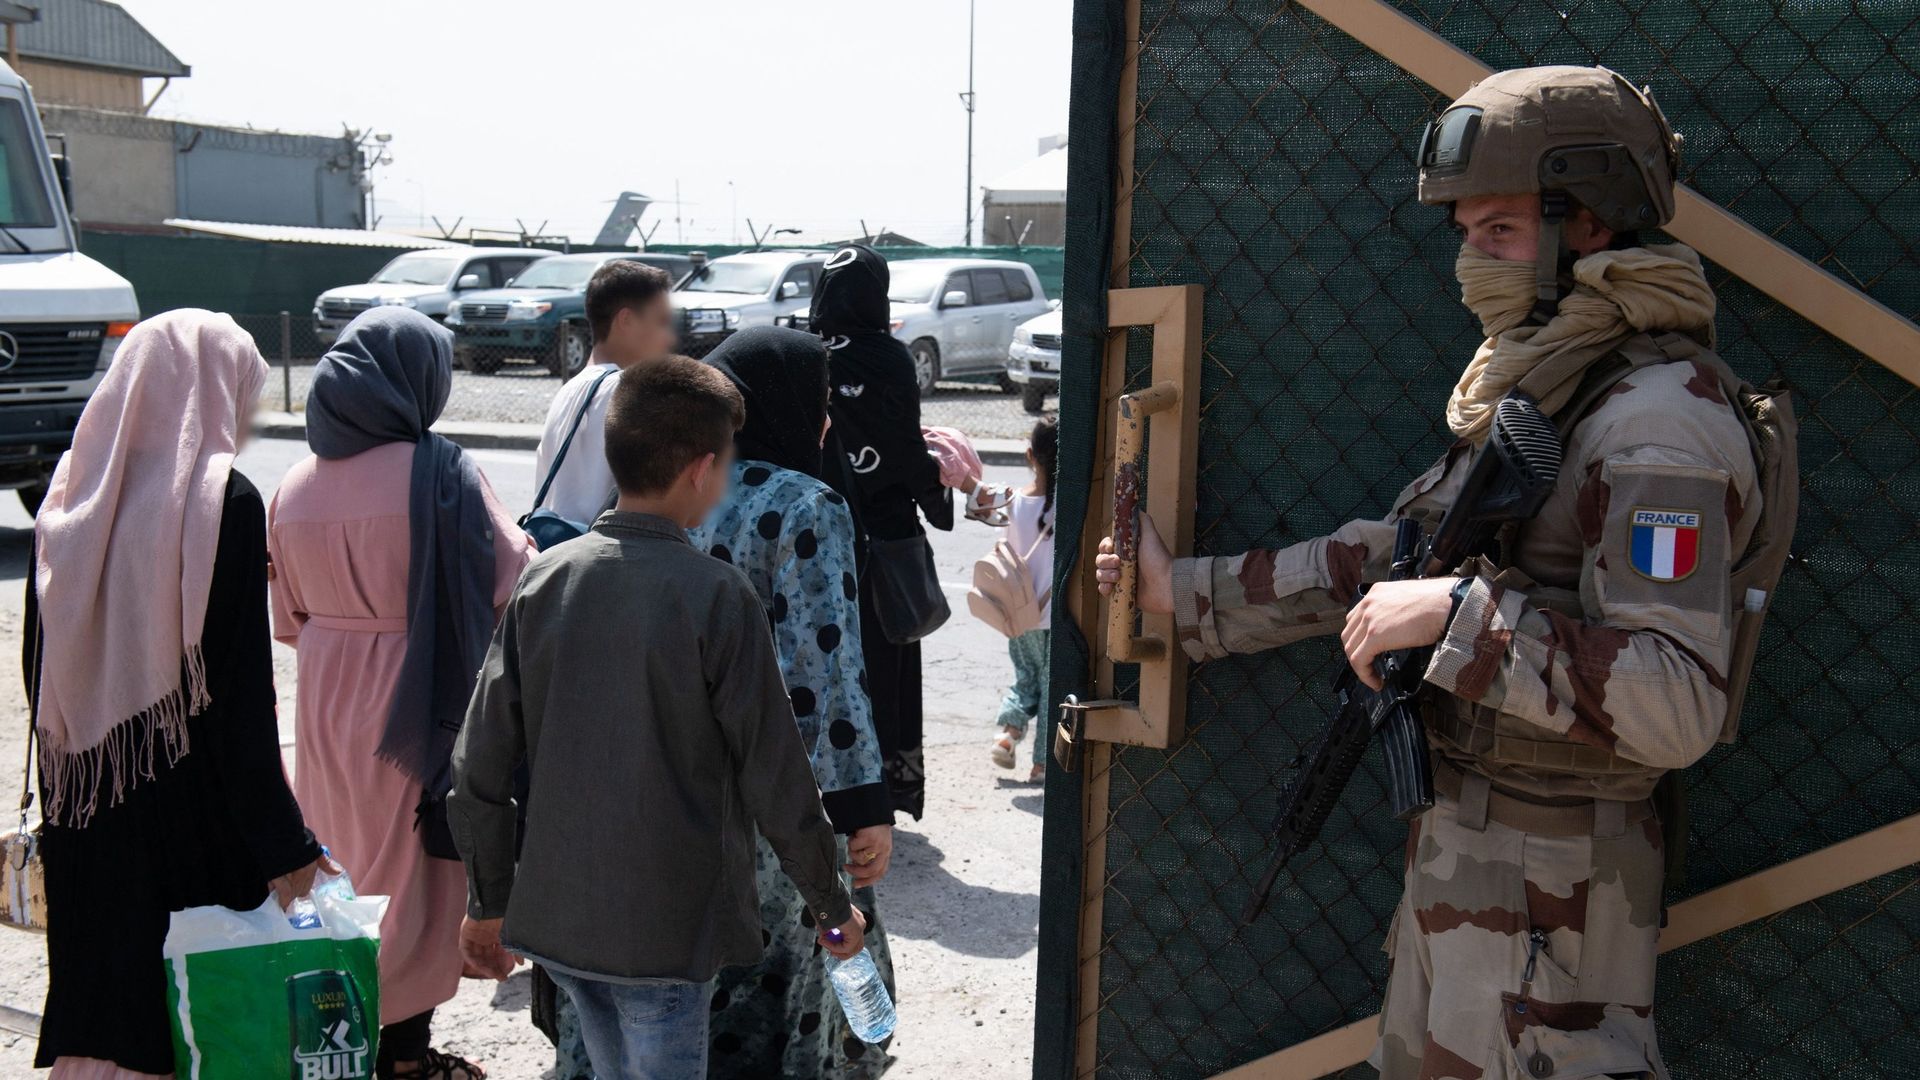 Un militaire français surveille une opération d’évacuation d’Afghan à l’aéroport de Kaboul, le 15 août 2021